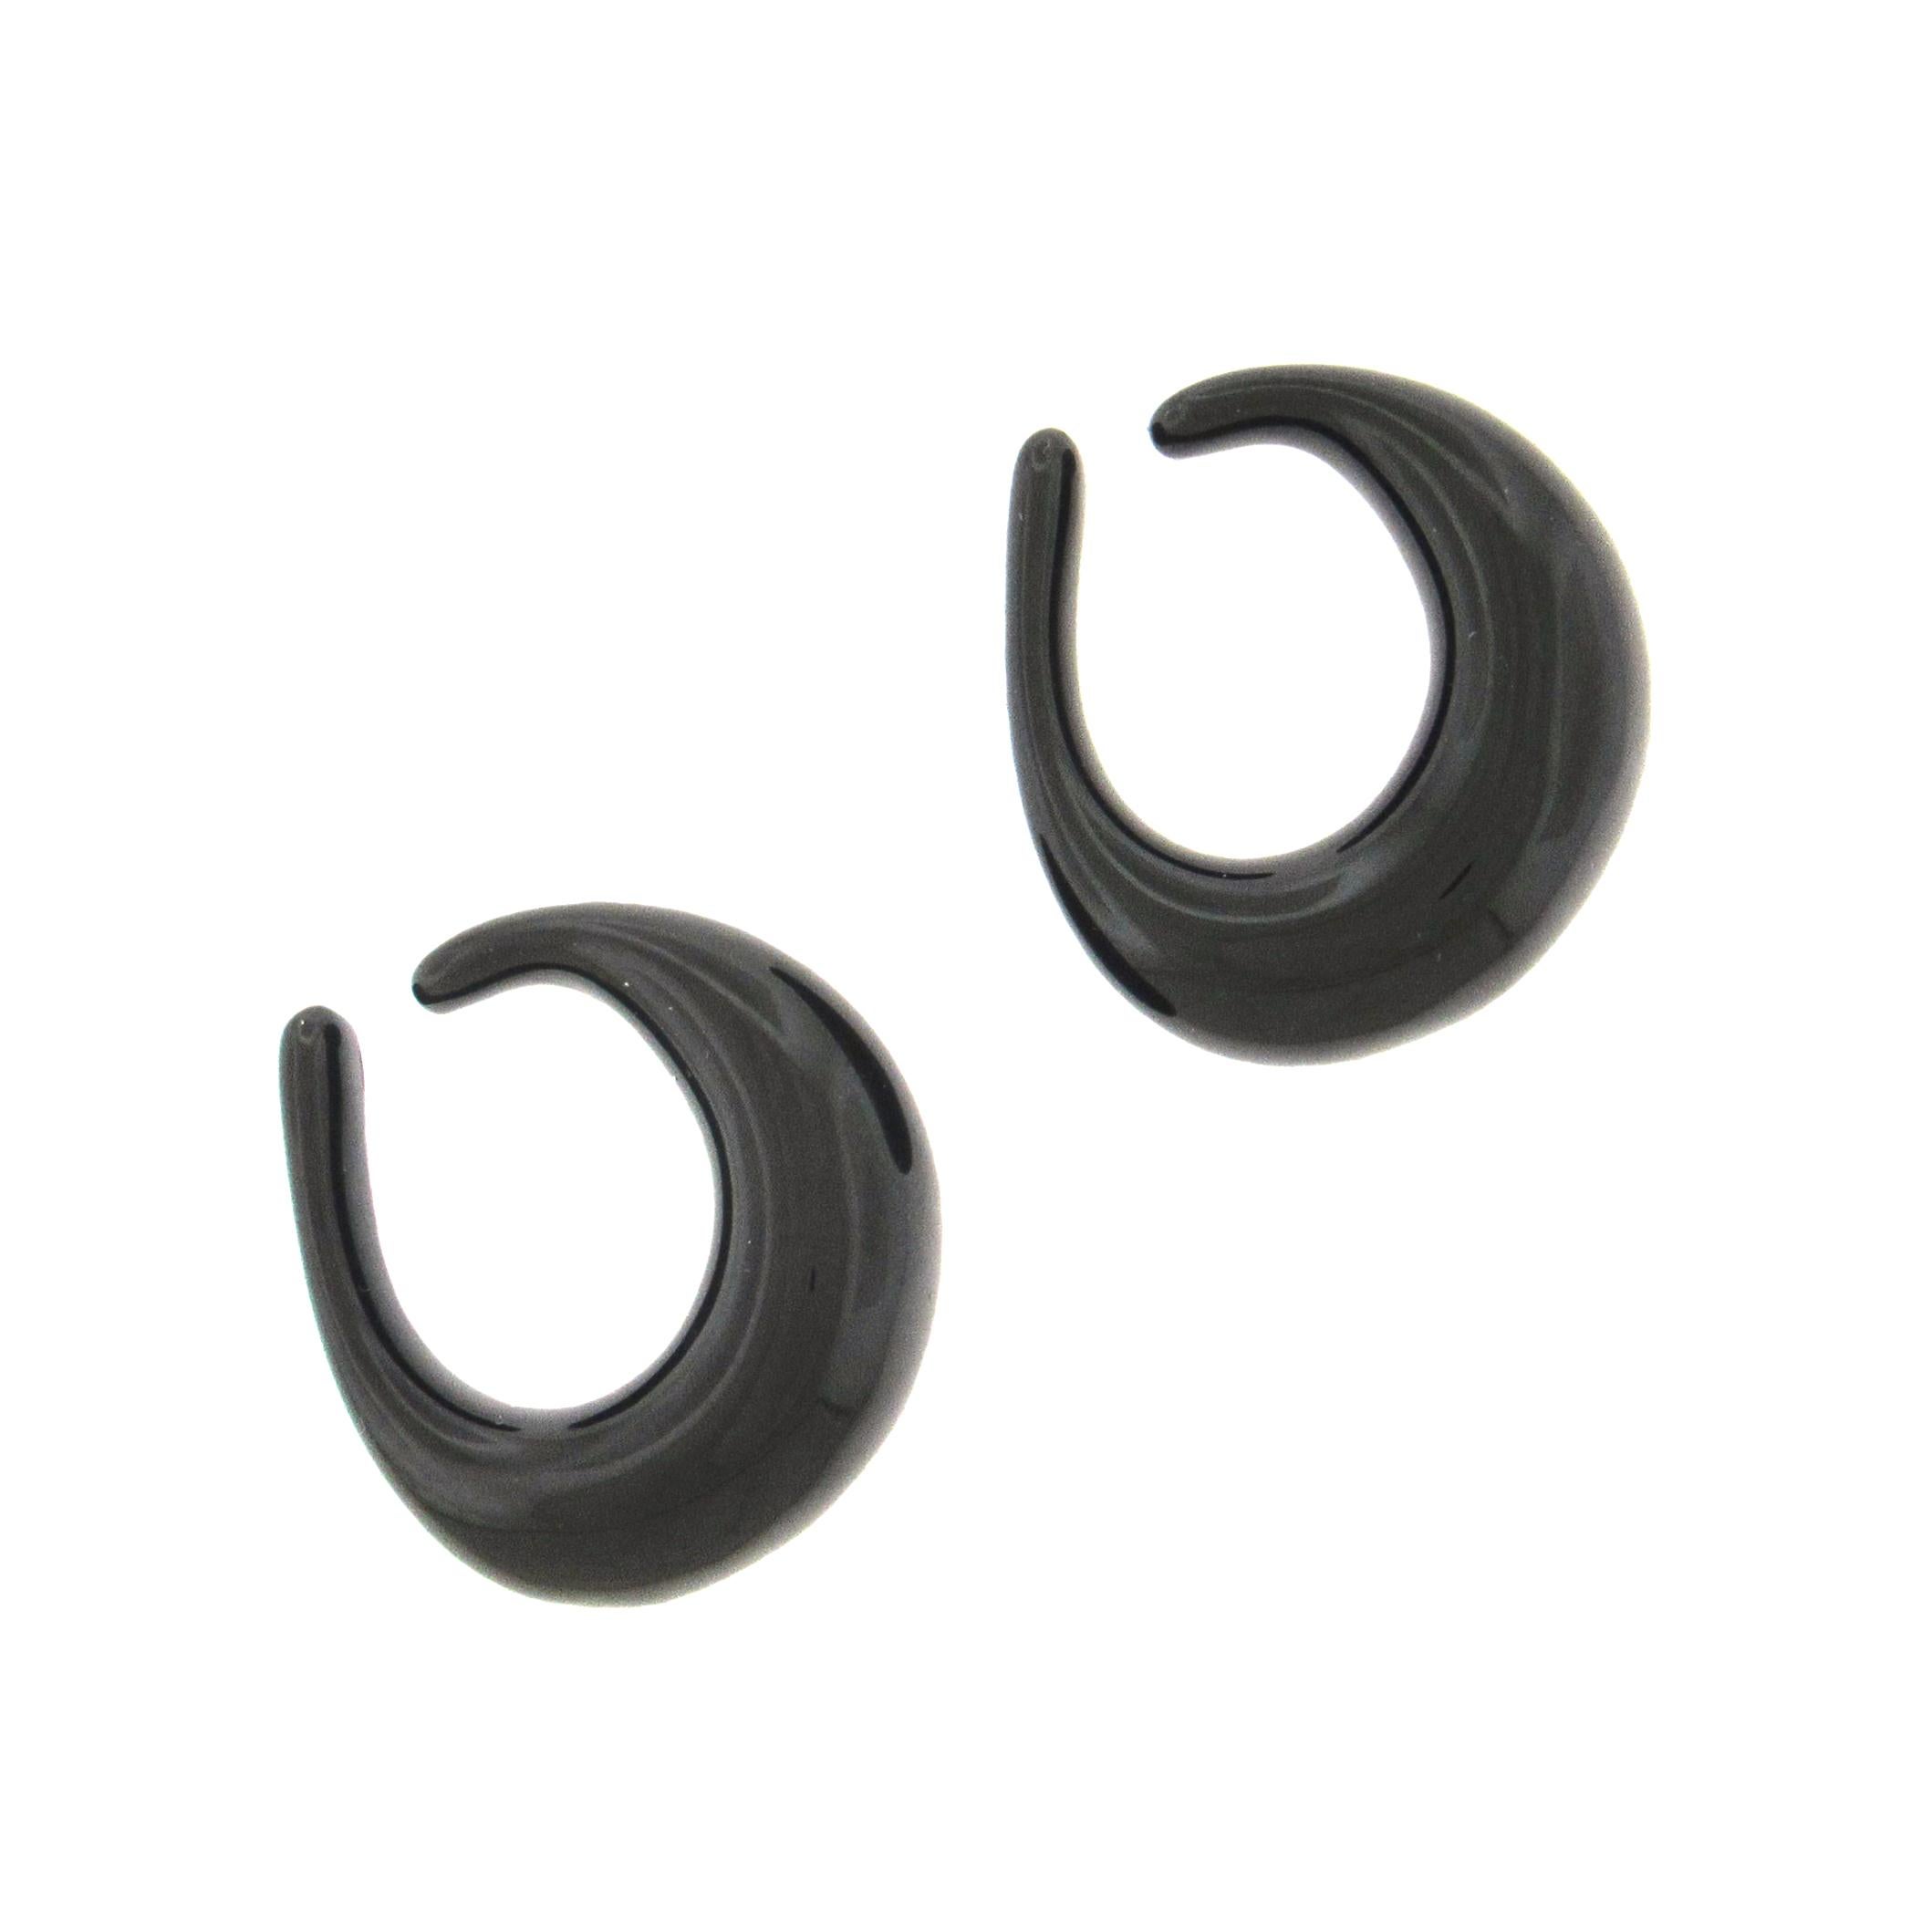 Les boucles d'oreille en cristal noir Les Boucles de Baccarat se glissent par le haut de l'oreille - l'hélix - et descendent en toute sécurité dans l'oreille sous forme d'anneaux. Les boucles d'oreilles mesurent 1-1/8″ de diamètre, 1/2″ au plus